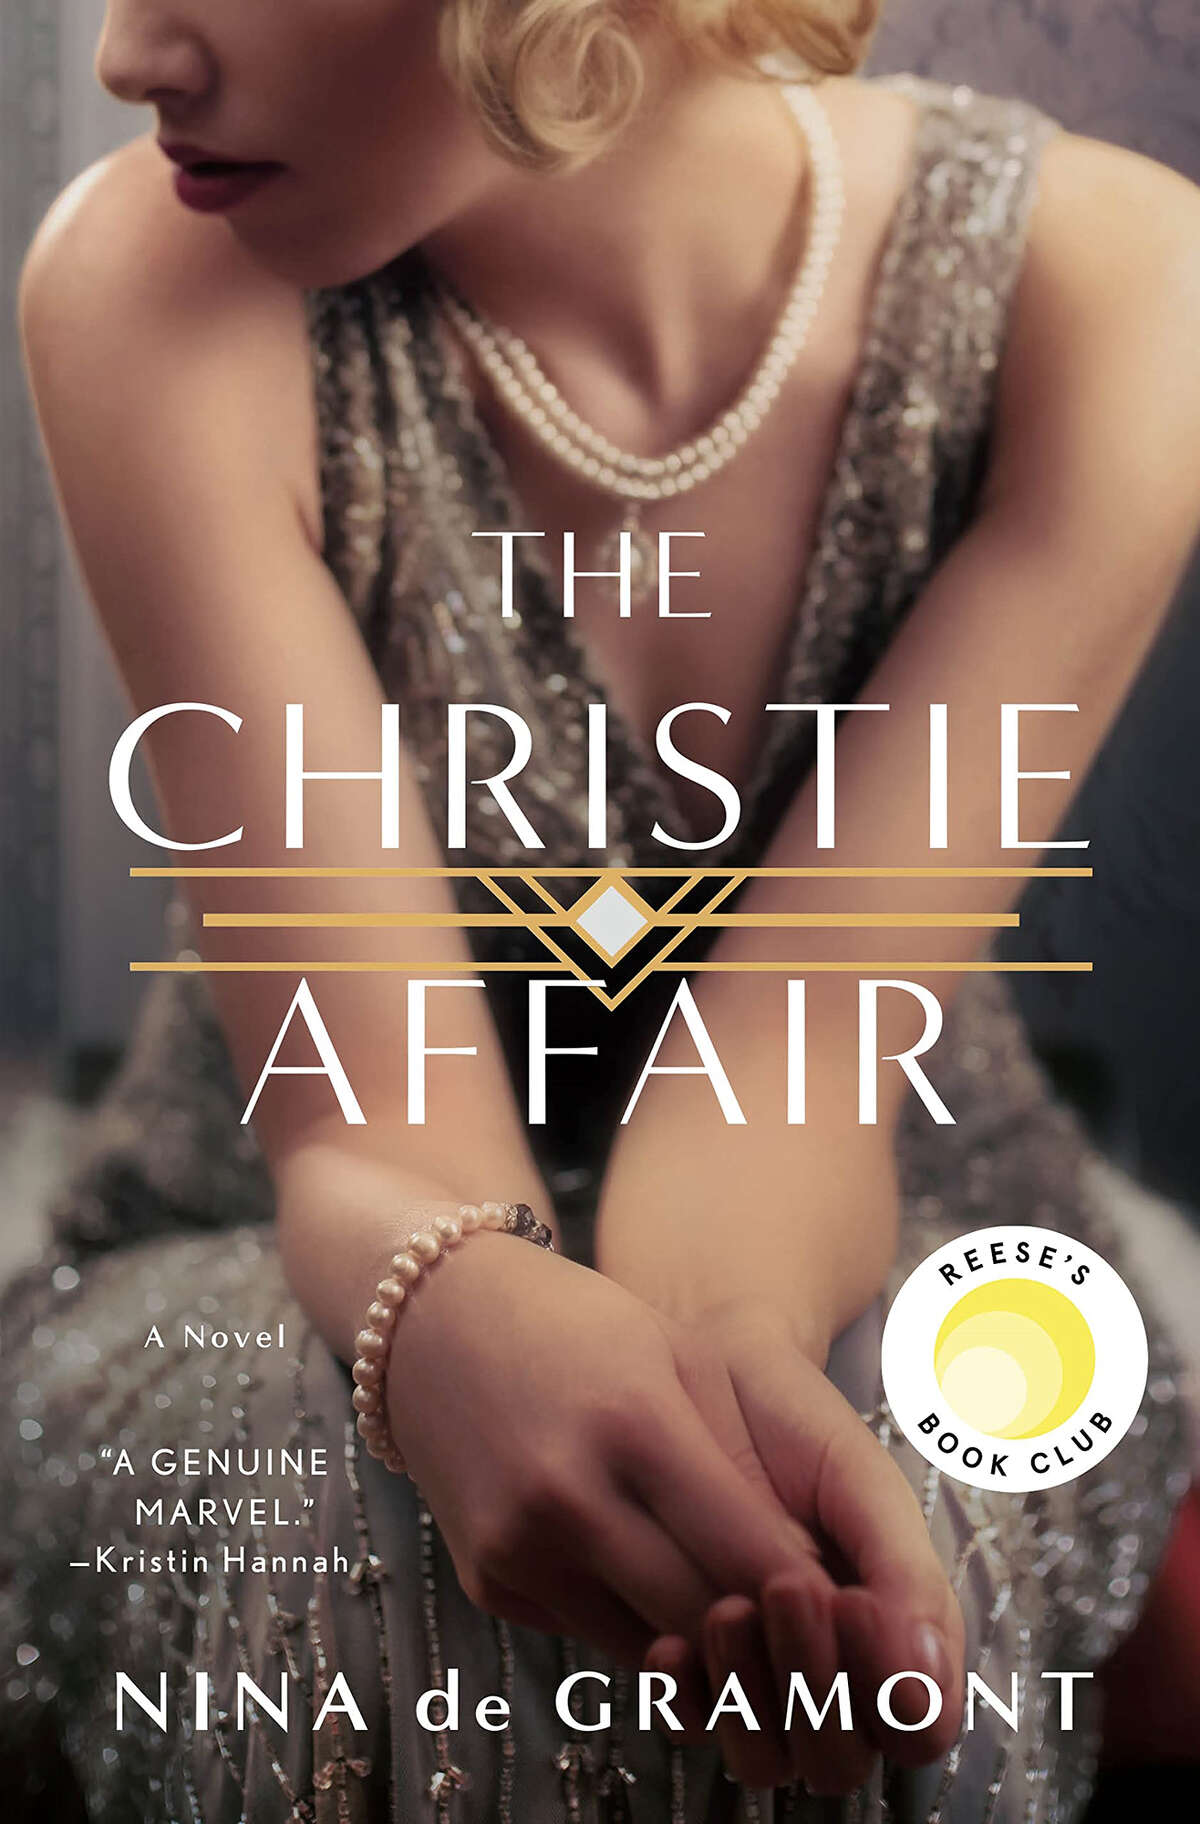 "The Christie Affair"